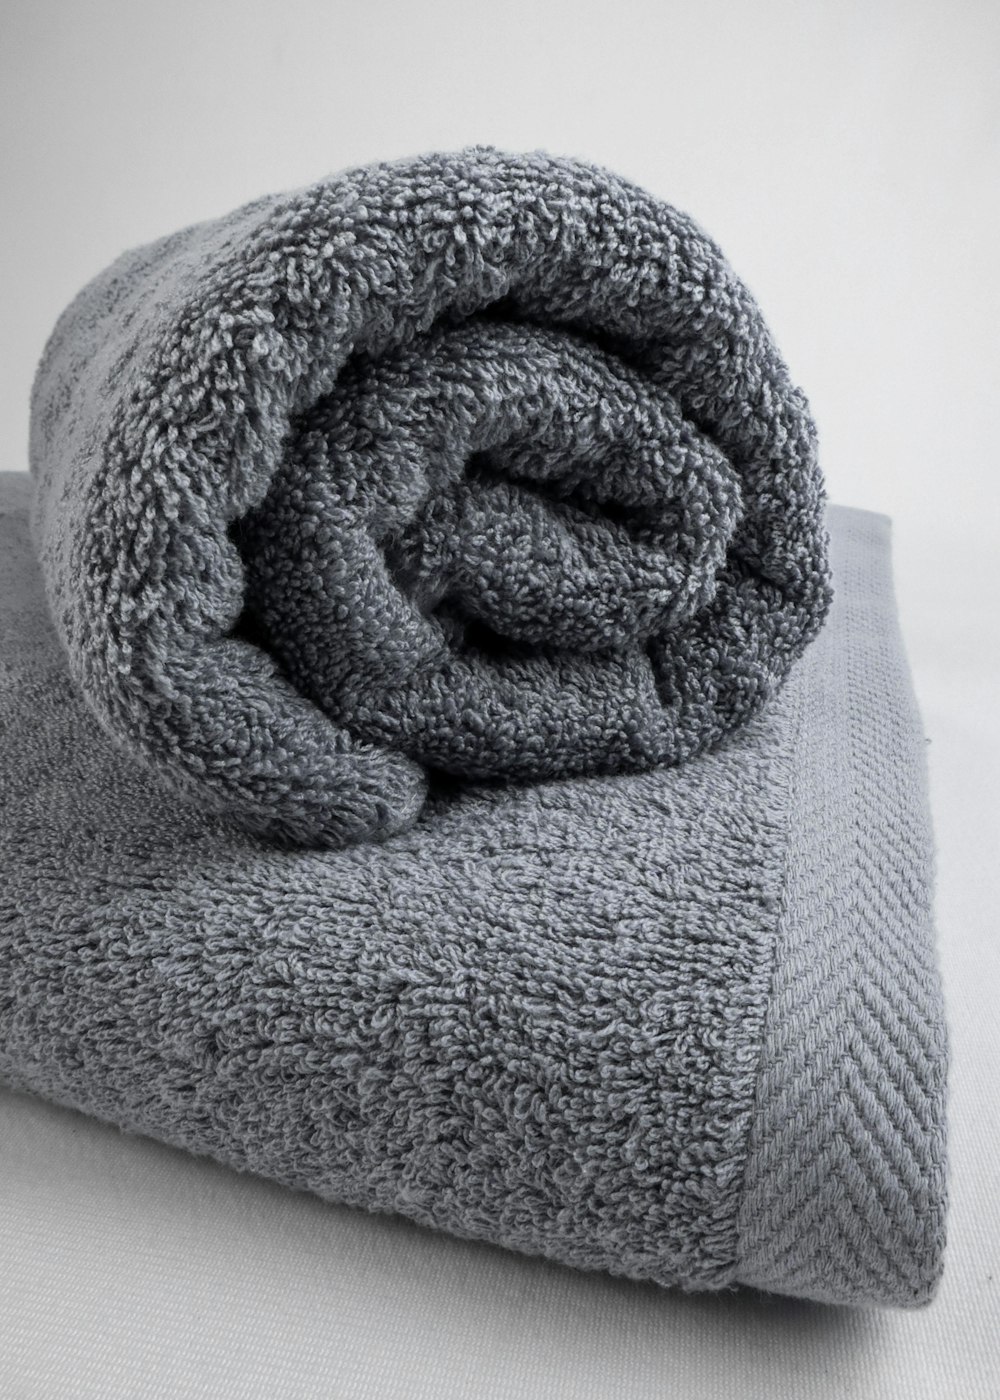 uma toalha cinza dobrada em cima de uma cama